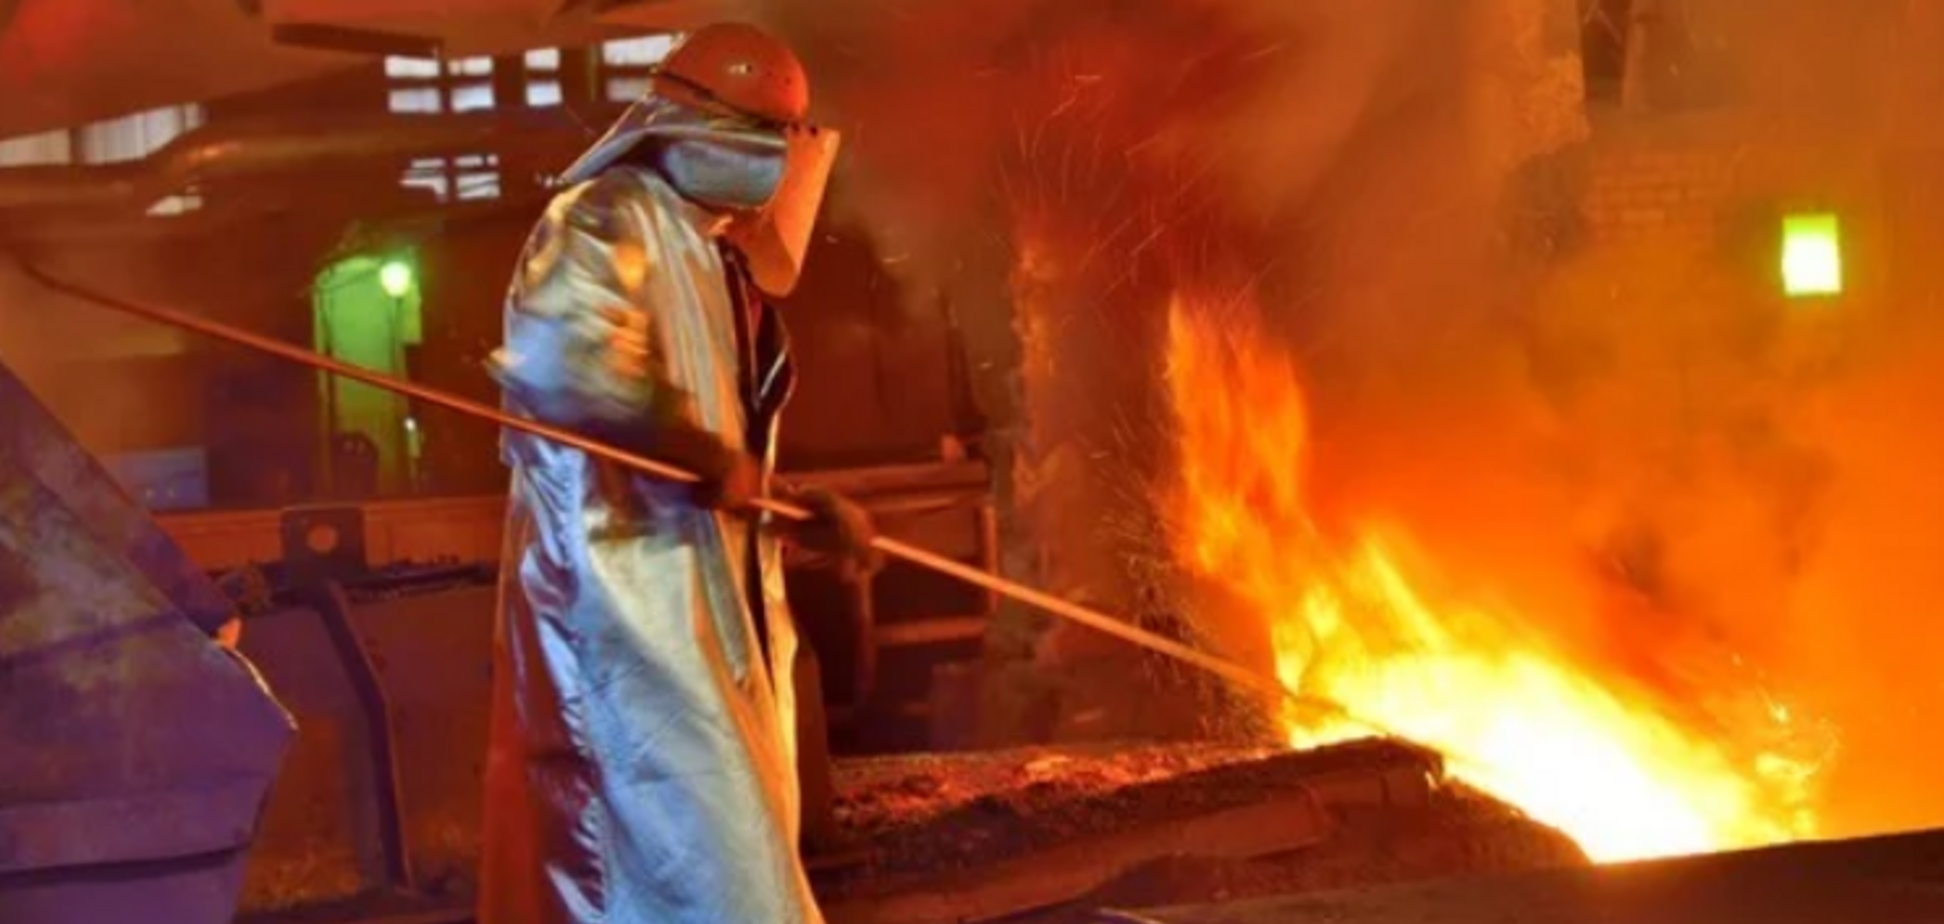 У зв'язку з падінням споживання сталі в усьому світі виплавка в Україні за останні 2 місяці впала на 10% - ЗМІ